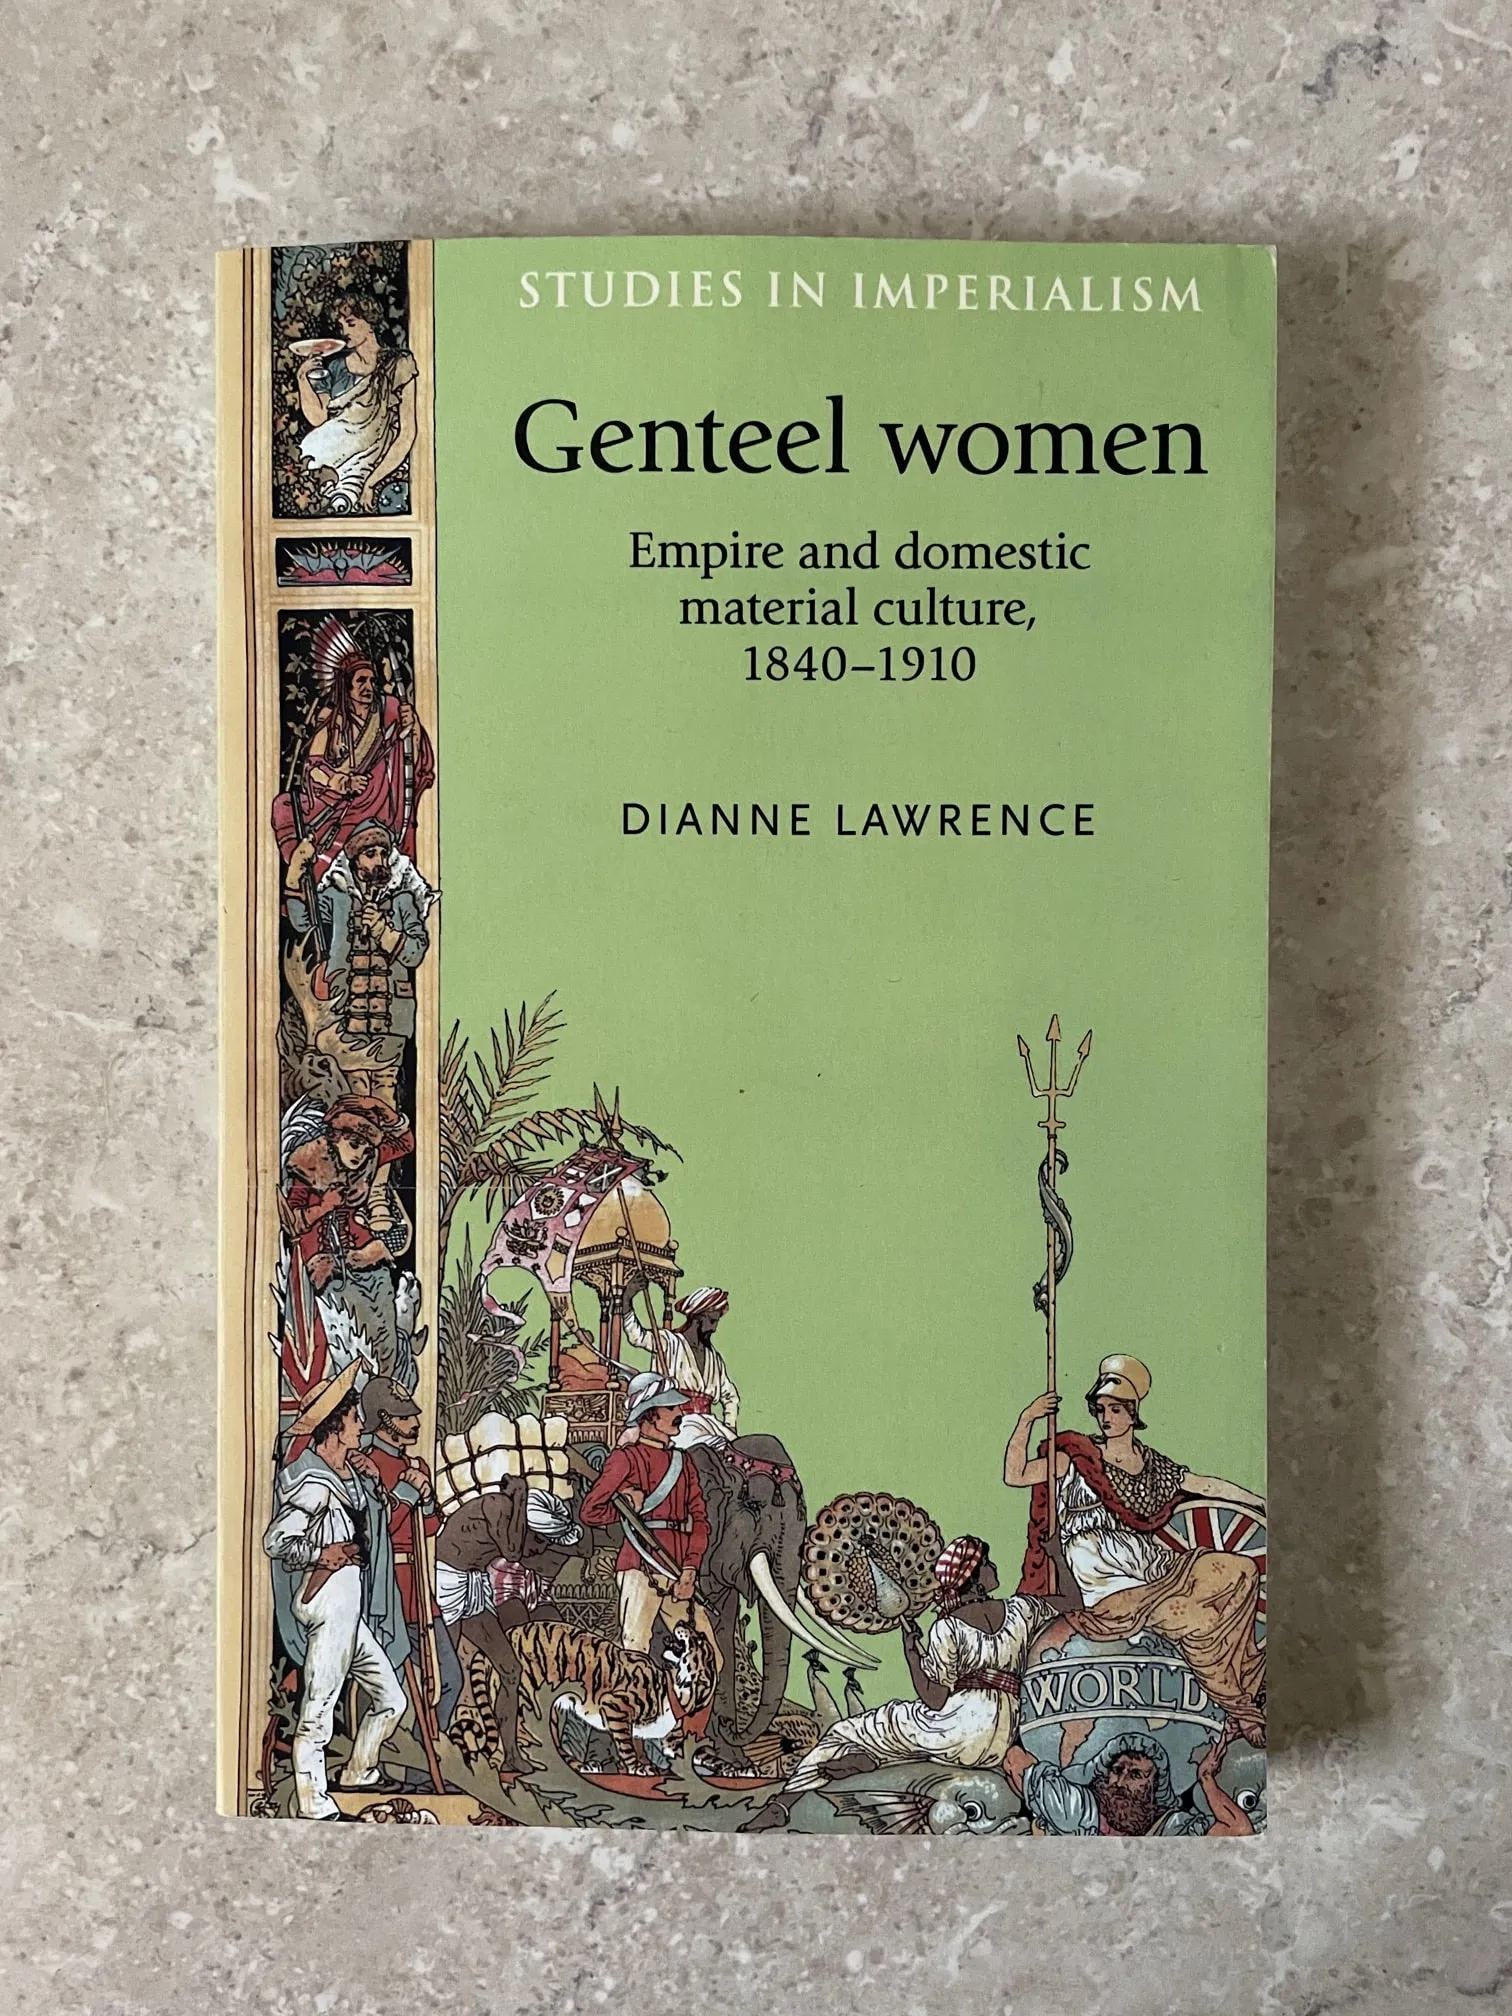 Genteel Women: Dianne Lawrence